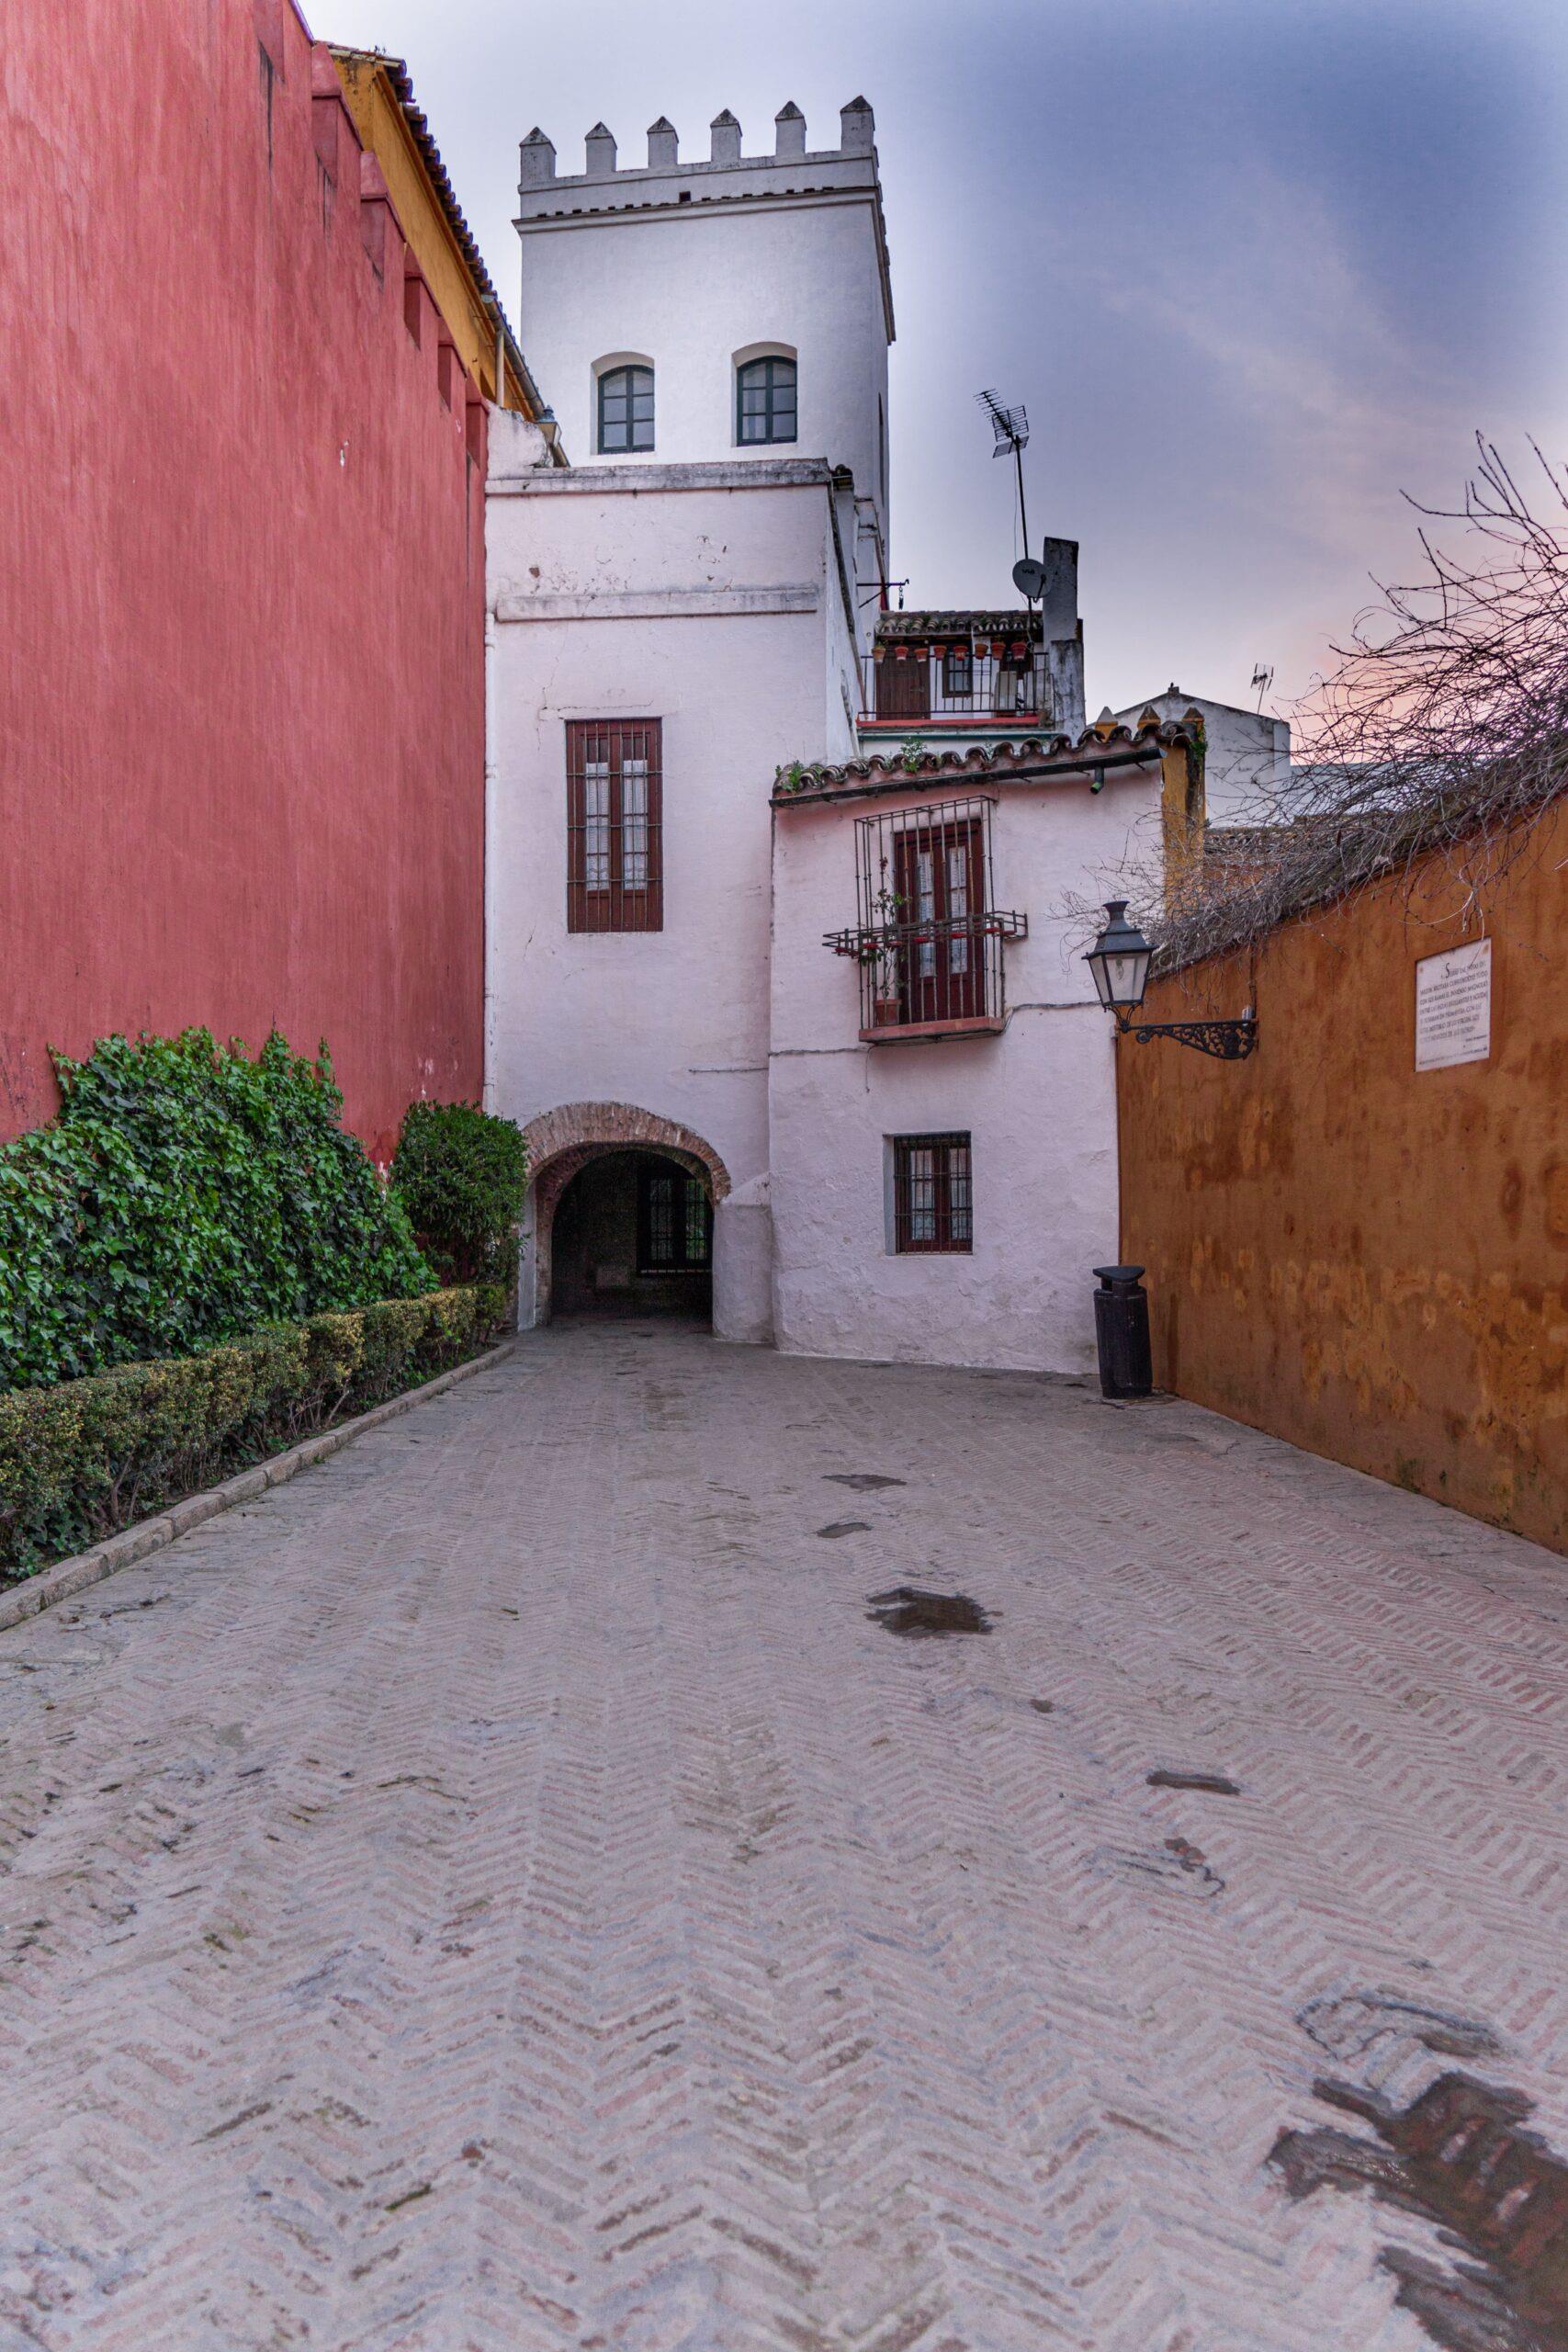 Freetour-The-Seville-Jewish-Quarter:-Santa-Cruz-2